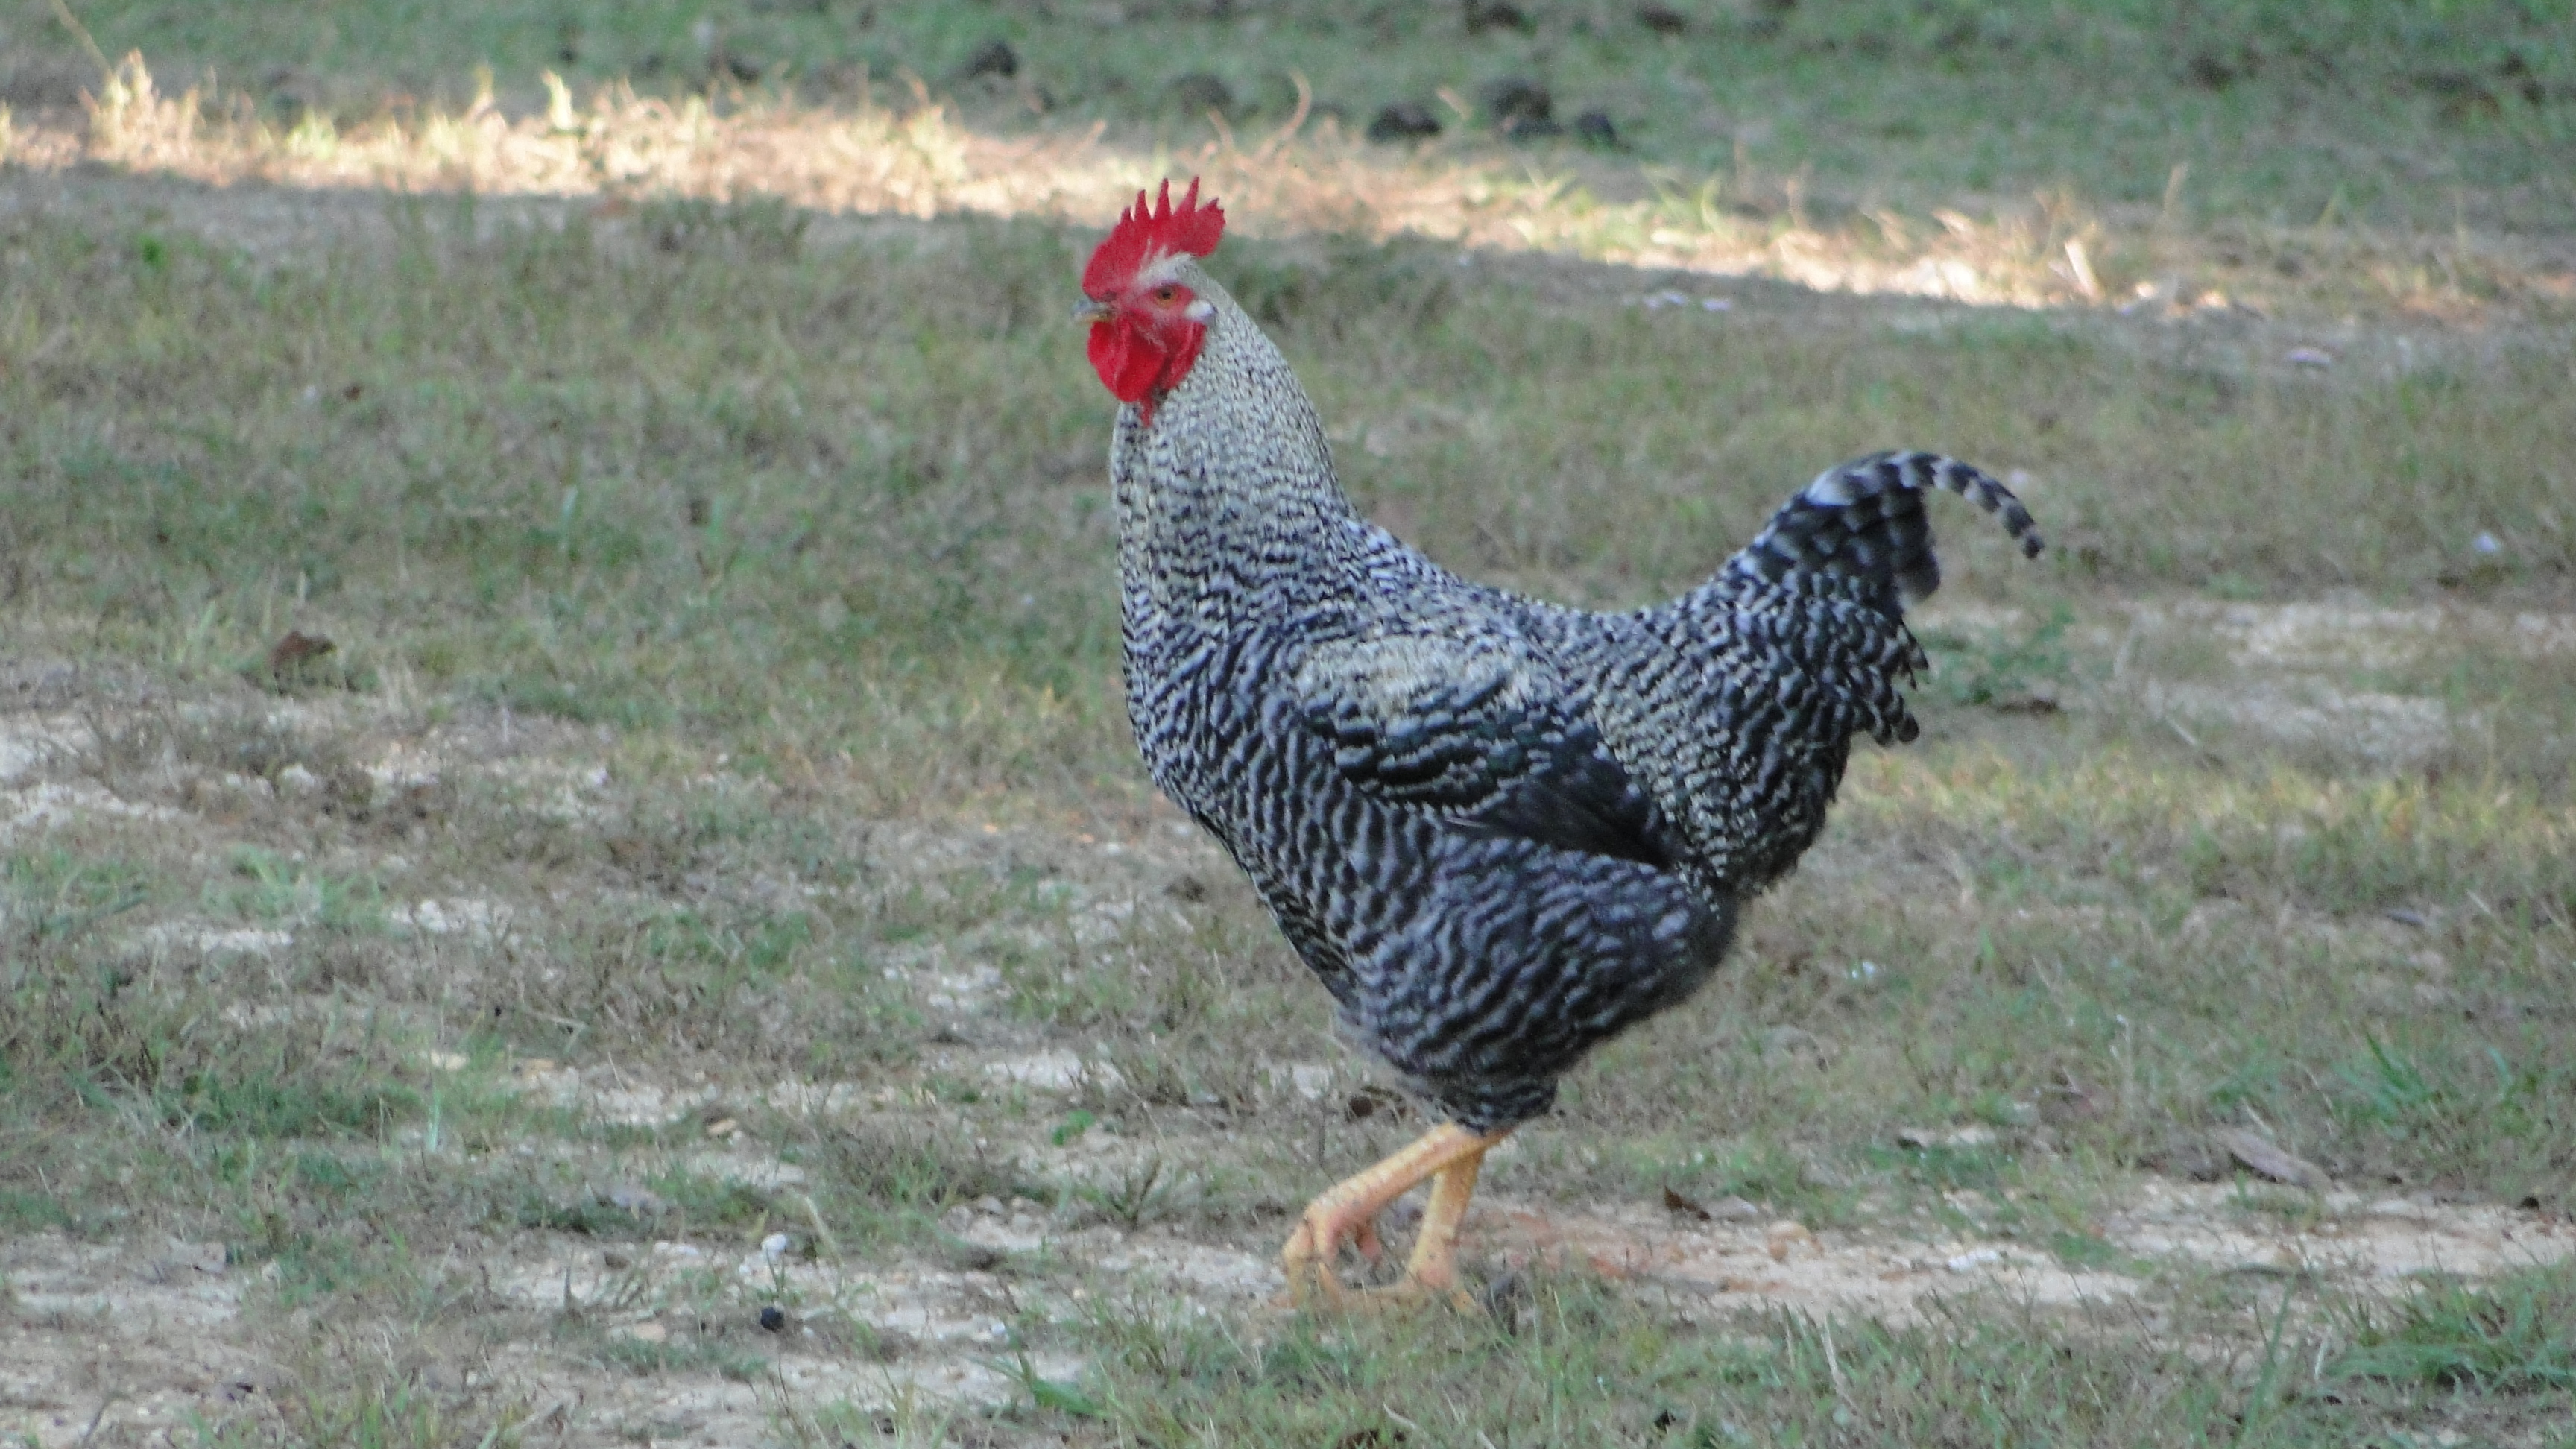 Black sex link rooster